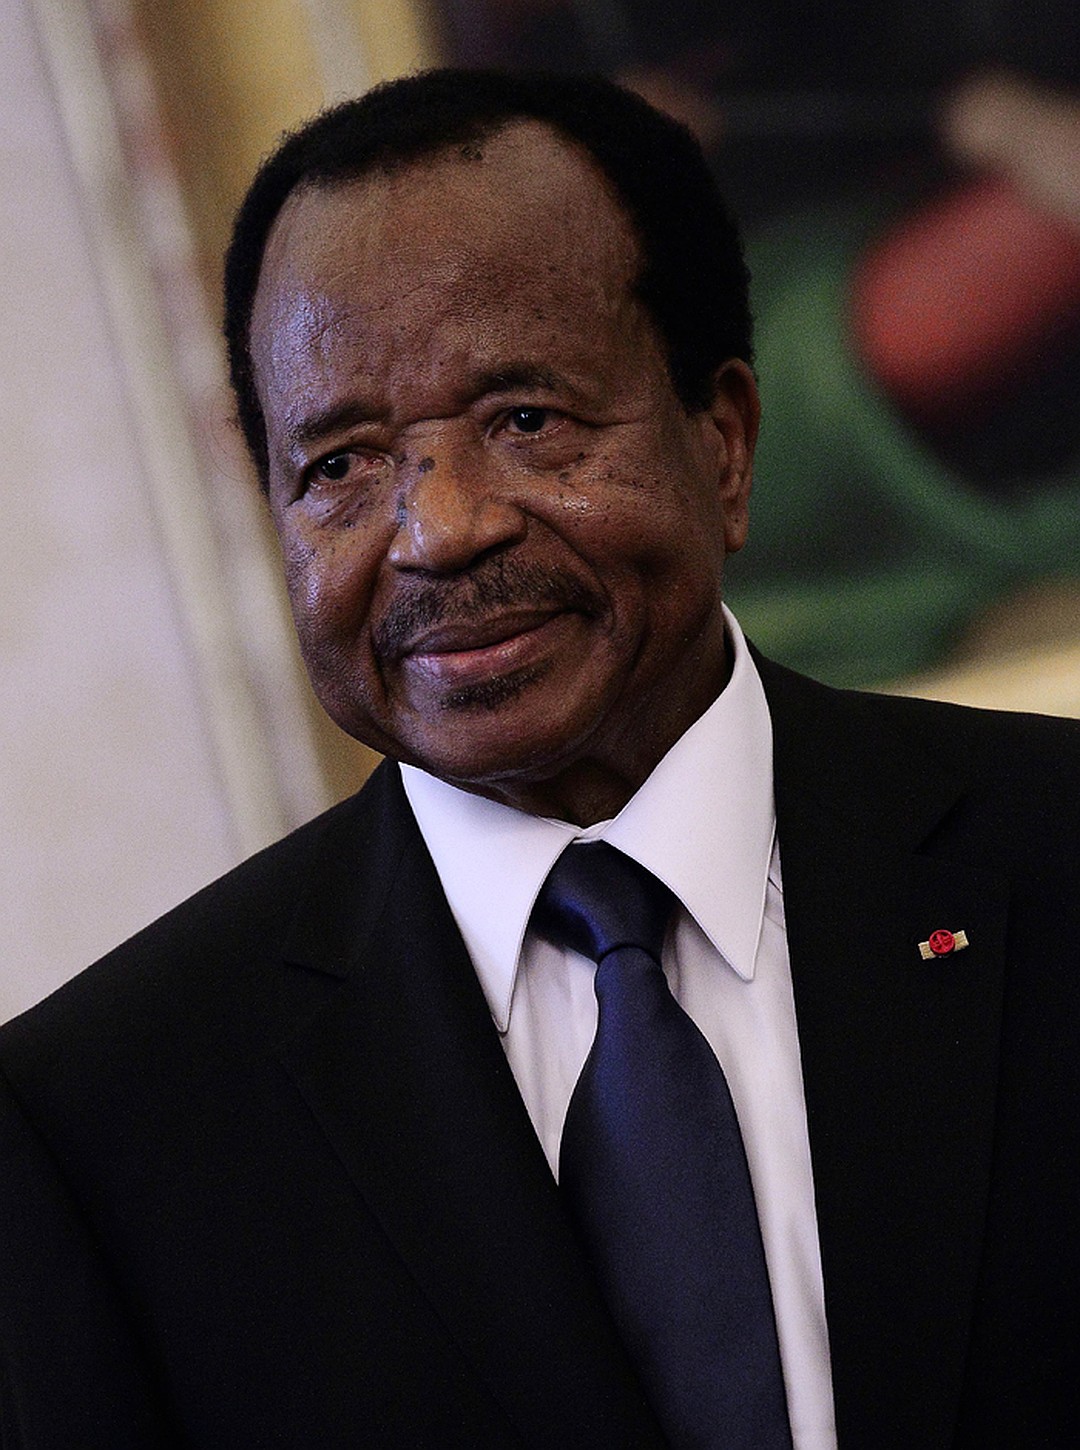 Самым пожилым действующим президентом в мире считается глава Камеруна Поль Бийя Фото: GLOBAL LOOK PRESS